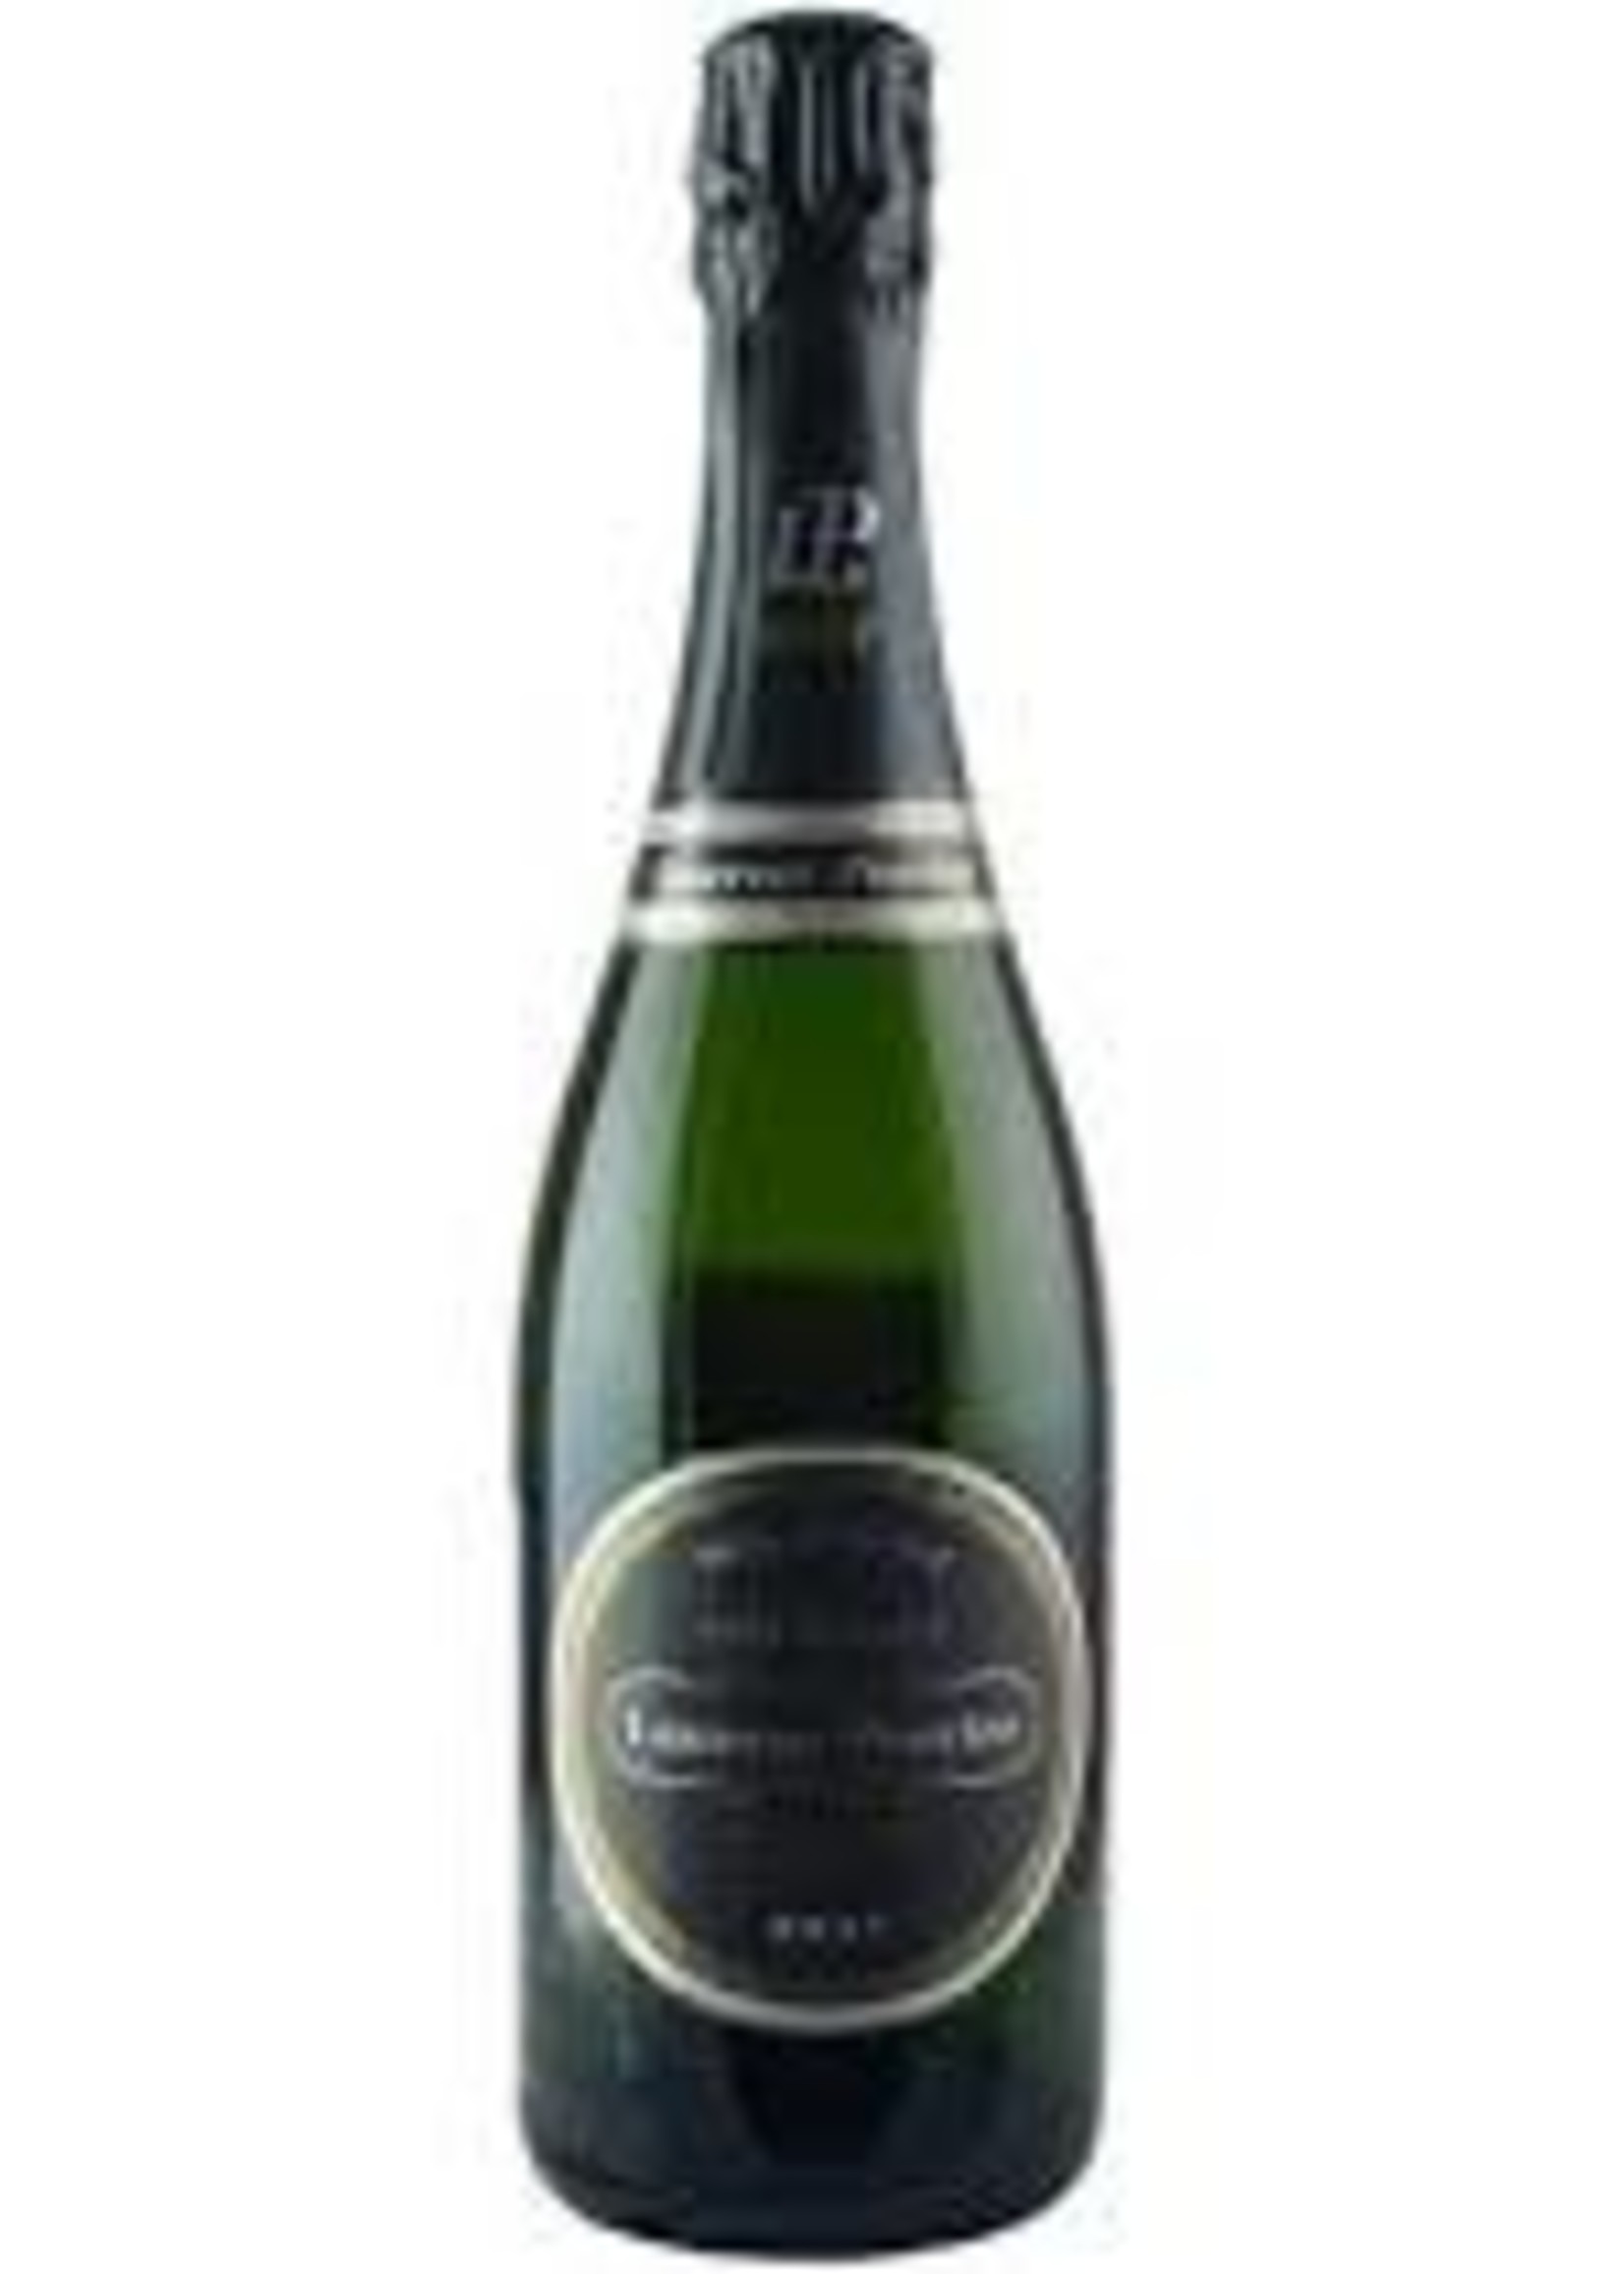 Laurent Perrier 2008 Champagne Vintage Brut 750ml